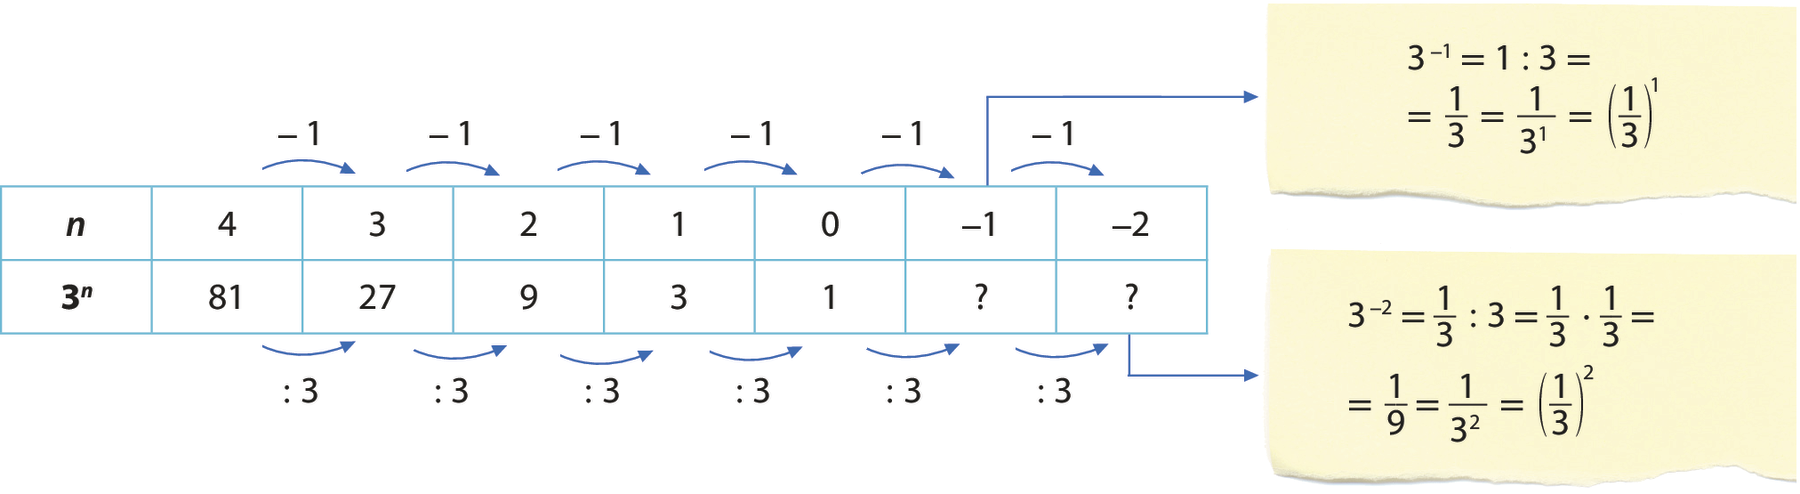 Esquema. Quadro com duas linhas e 7 colunas. Cada célula da primeira linha contém os seguintes termos: n, 4, 3, 2, 1, 0, menos 1 e menos 2. Cada célula da segunda linha contém os seguintes termos: 3 elevado a n, 81, 27, 9, 3, 1, ponto de interrogação e ponto de interrogação. Sobre a primeira linha há a indicação com uma seta, a partir do termo 4, de que o próximo termo é igual ao termo anterior menos 1. Abaixo da segunda linha há a indicação com uma seta, a partir do termo 81, de que o próximo termo é igual ao termo anterior dividido por 3. No termo ‘menos 1’ da primeira linha há uma seta apontando para a seguinte sentença matemática: 3 elevado a menos 1, igual, 1 dividido por 3, igual, fração 1 terço, igual, fração numerador 1 e denominador 3 elevado a 1, igual, abre parênteses, fração 1 terço, fecha parênteses, elevado a 1. No último termo ‘ponto de interrogação’ da segunda linha há uma seta apontando para a seguinte sentença matemática: 3 elevado a menos 2, igual,  fração 1 terço dividido por 3, igual, fração 1 terço vezes fração 1 terço, igual, fração 1 nono, igual, fração numerador 1 e denominador 3 elevado ao quadrado, igual, abre parênteses, fração 1 terço, fecha parênteses, elevado ao quadrado.